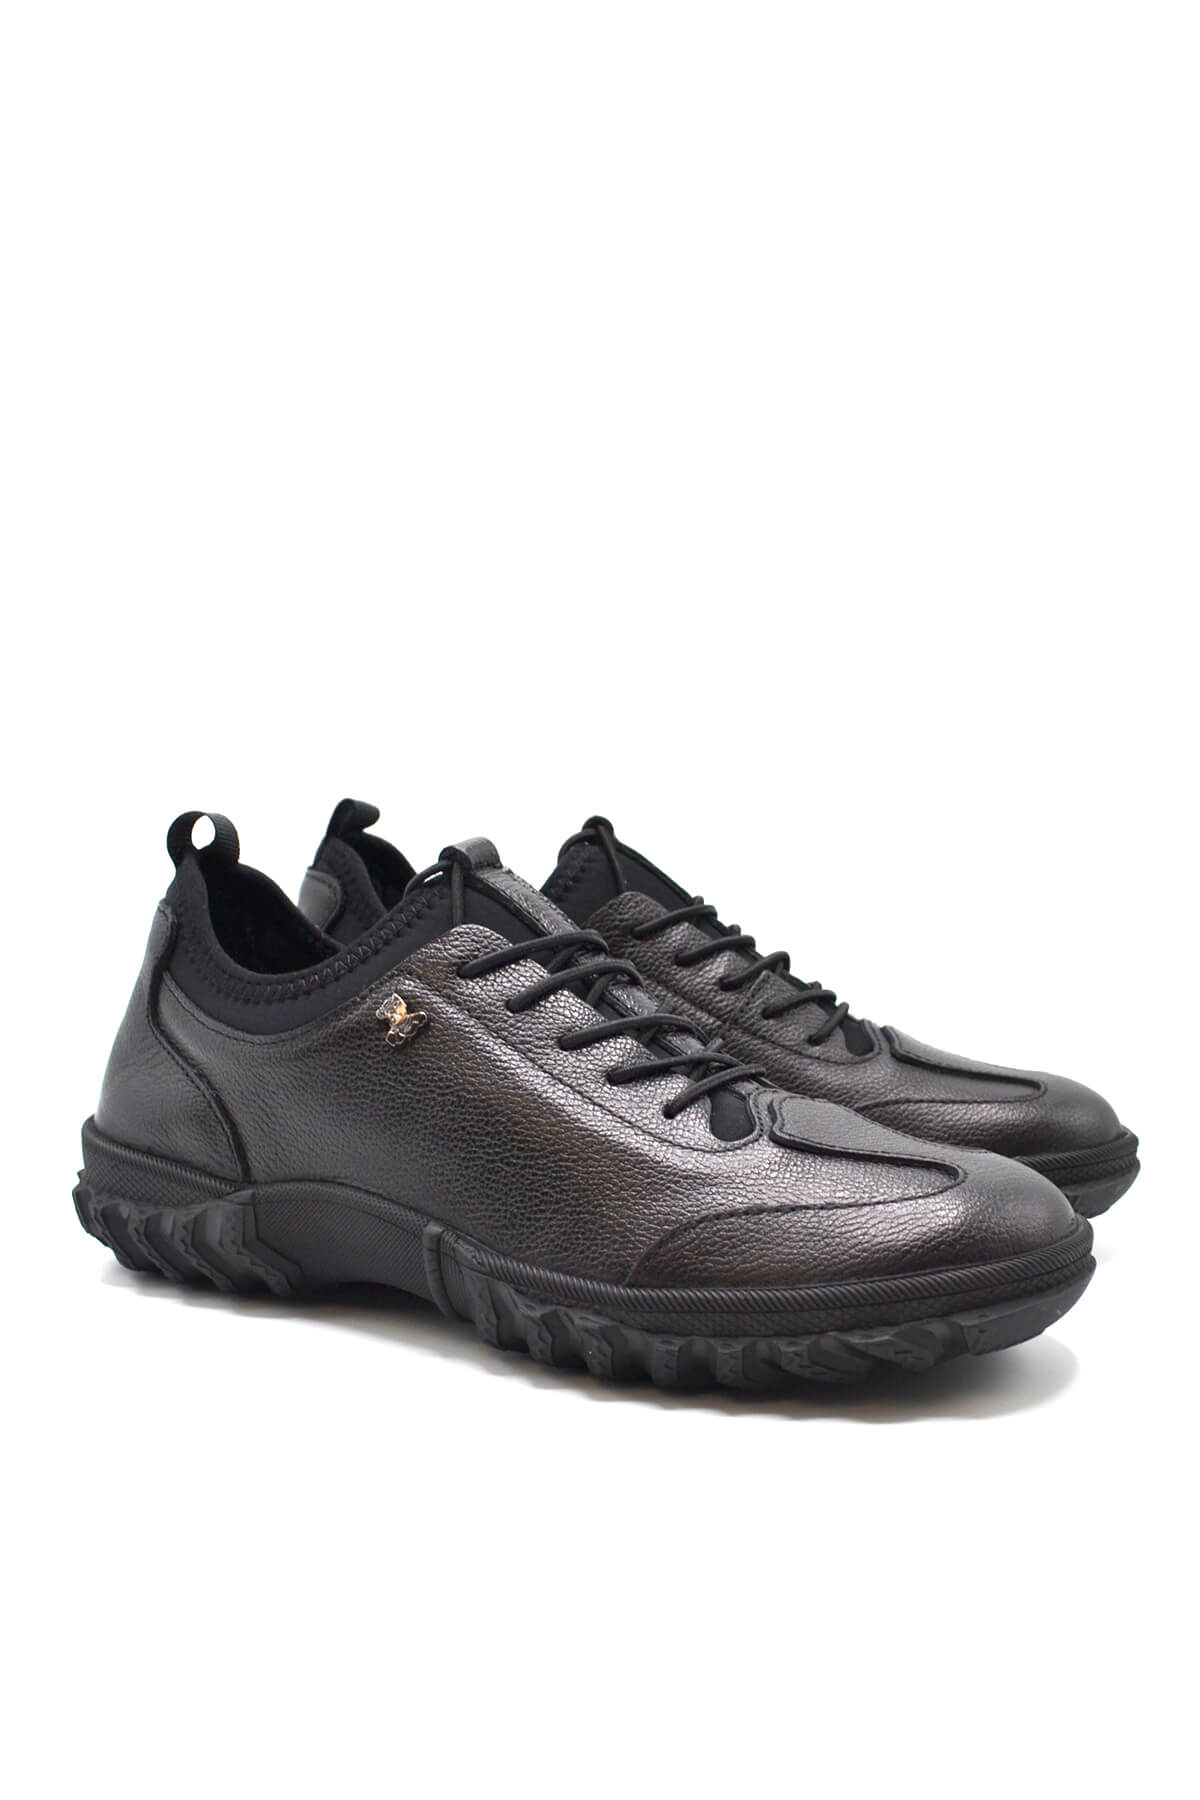 Kadın Comfort Deri Ayakkabı Siyah 2255201K